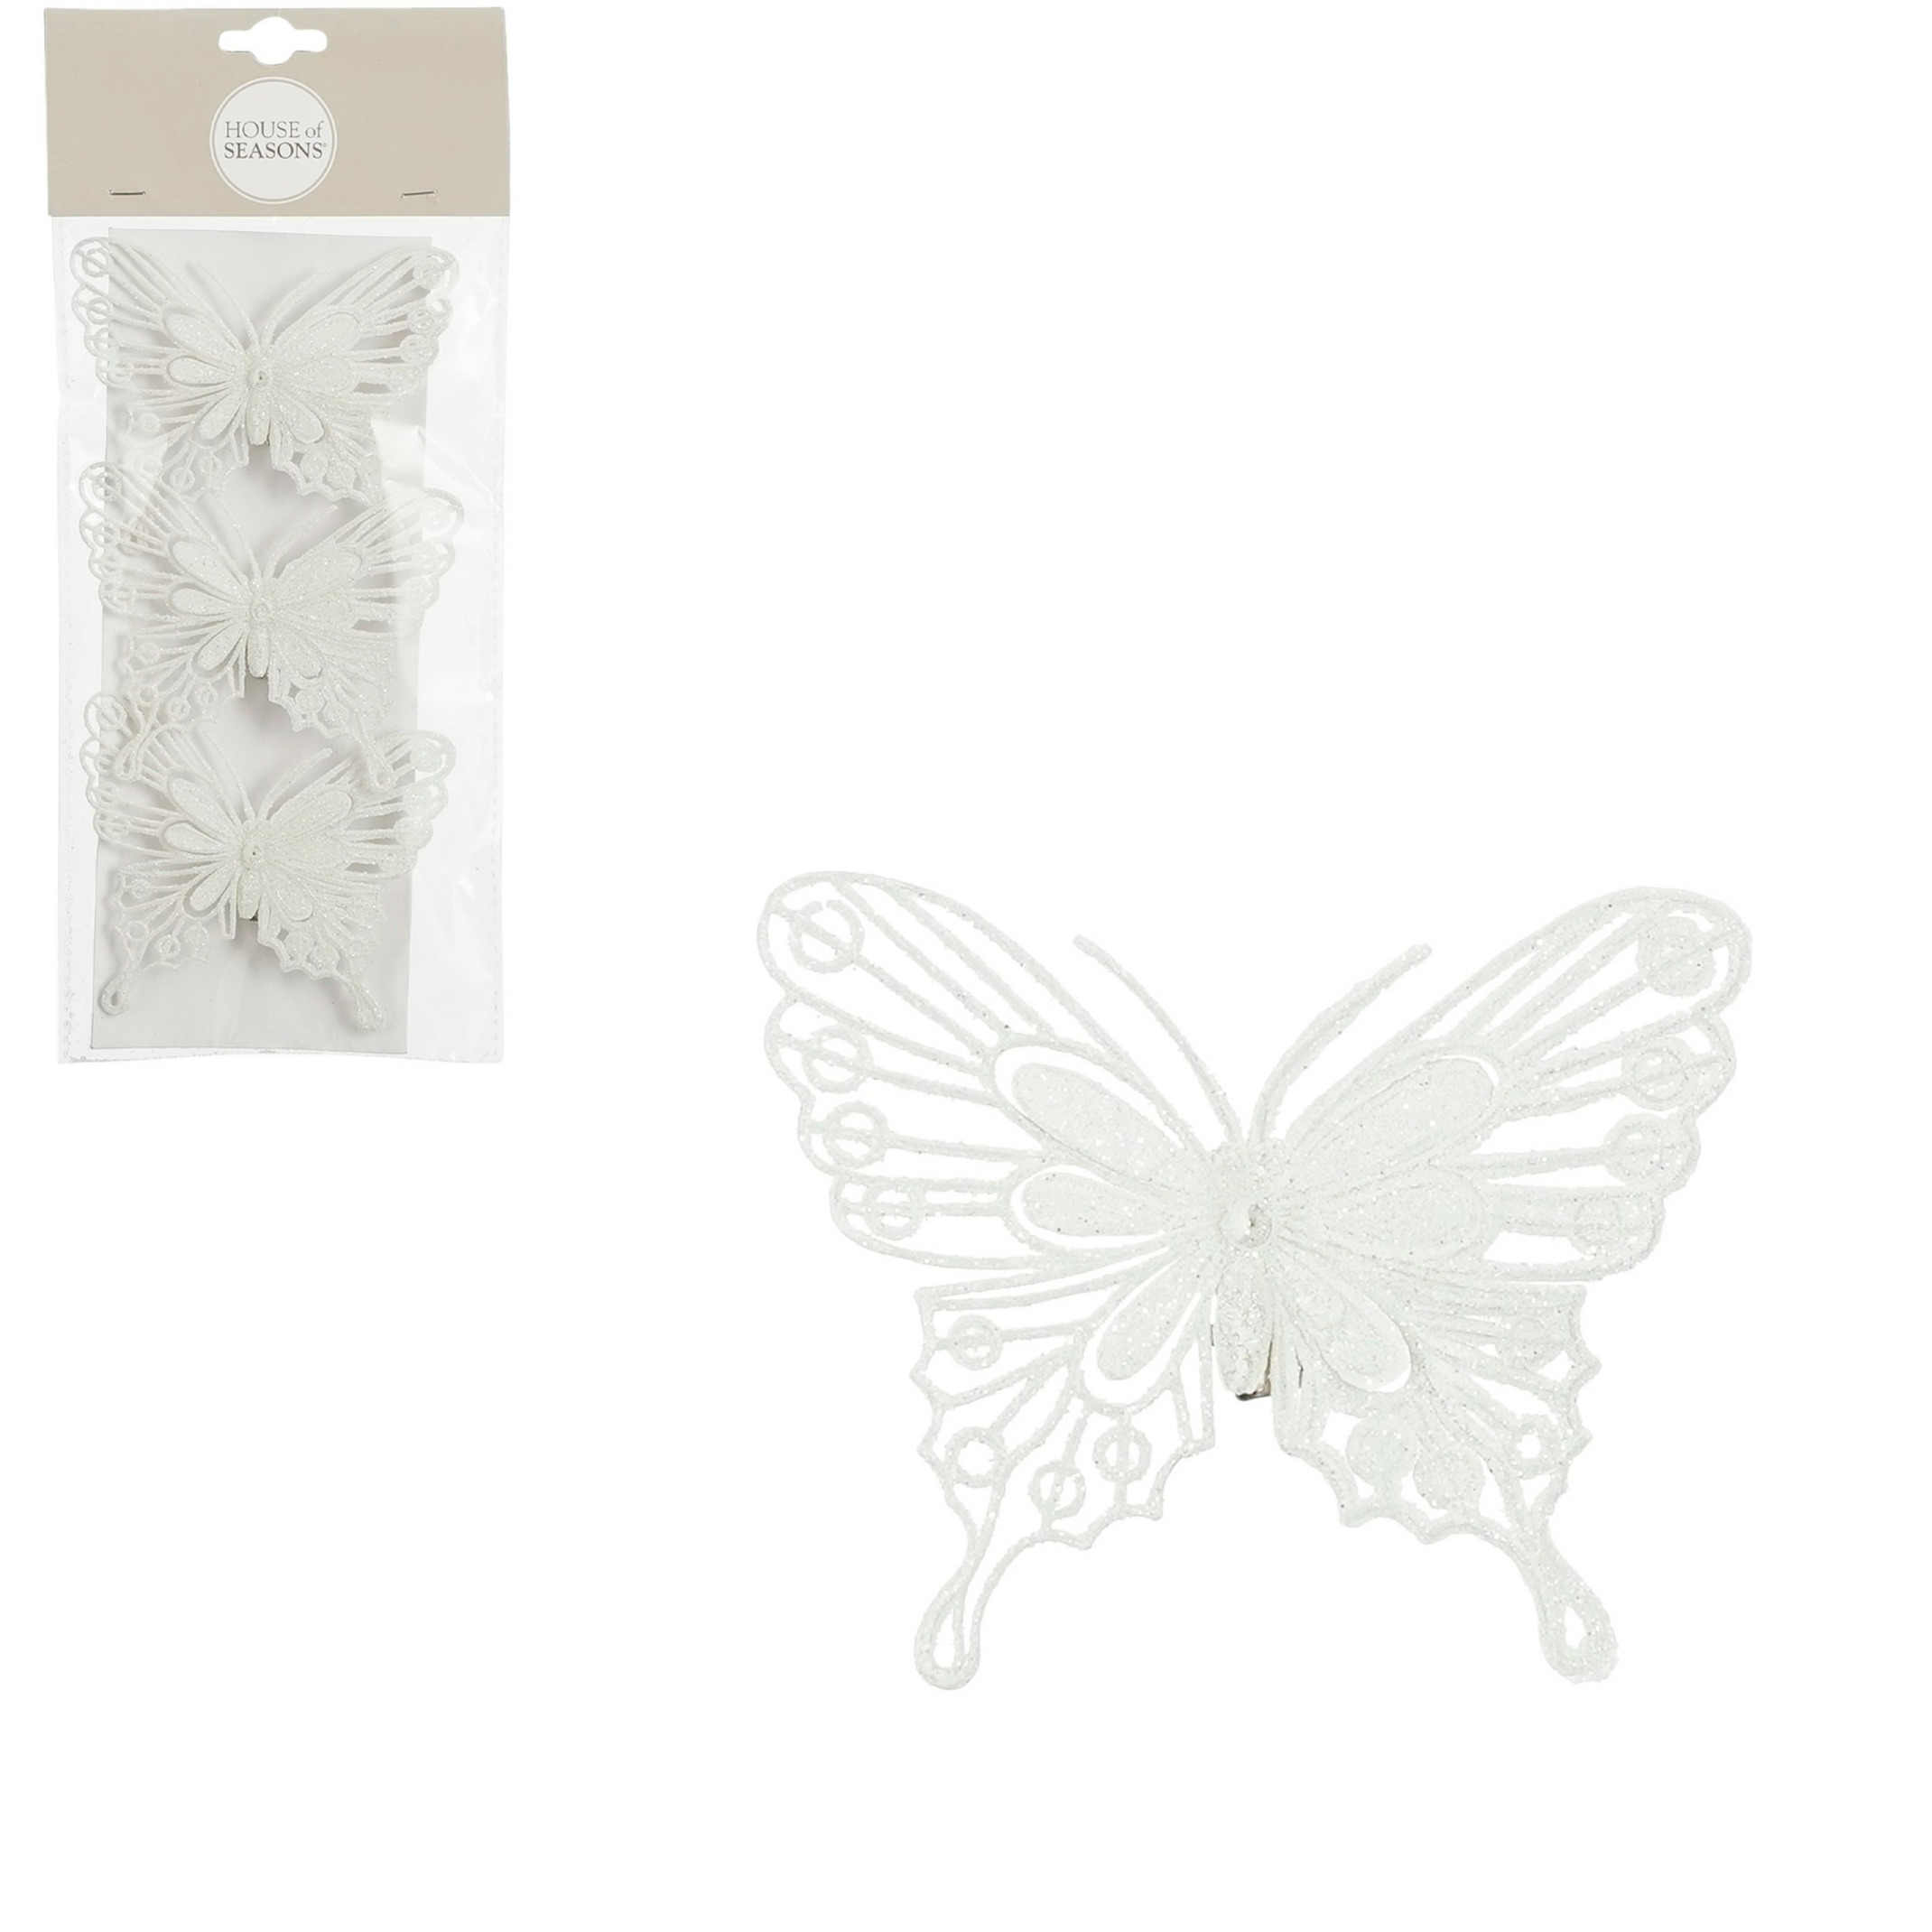 House of Seasons vlinders op clip 3x stuks wit glitter 10 cm